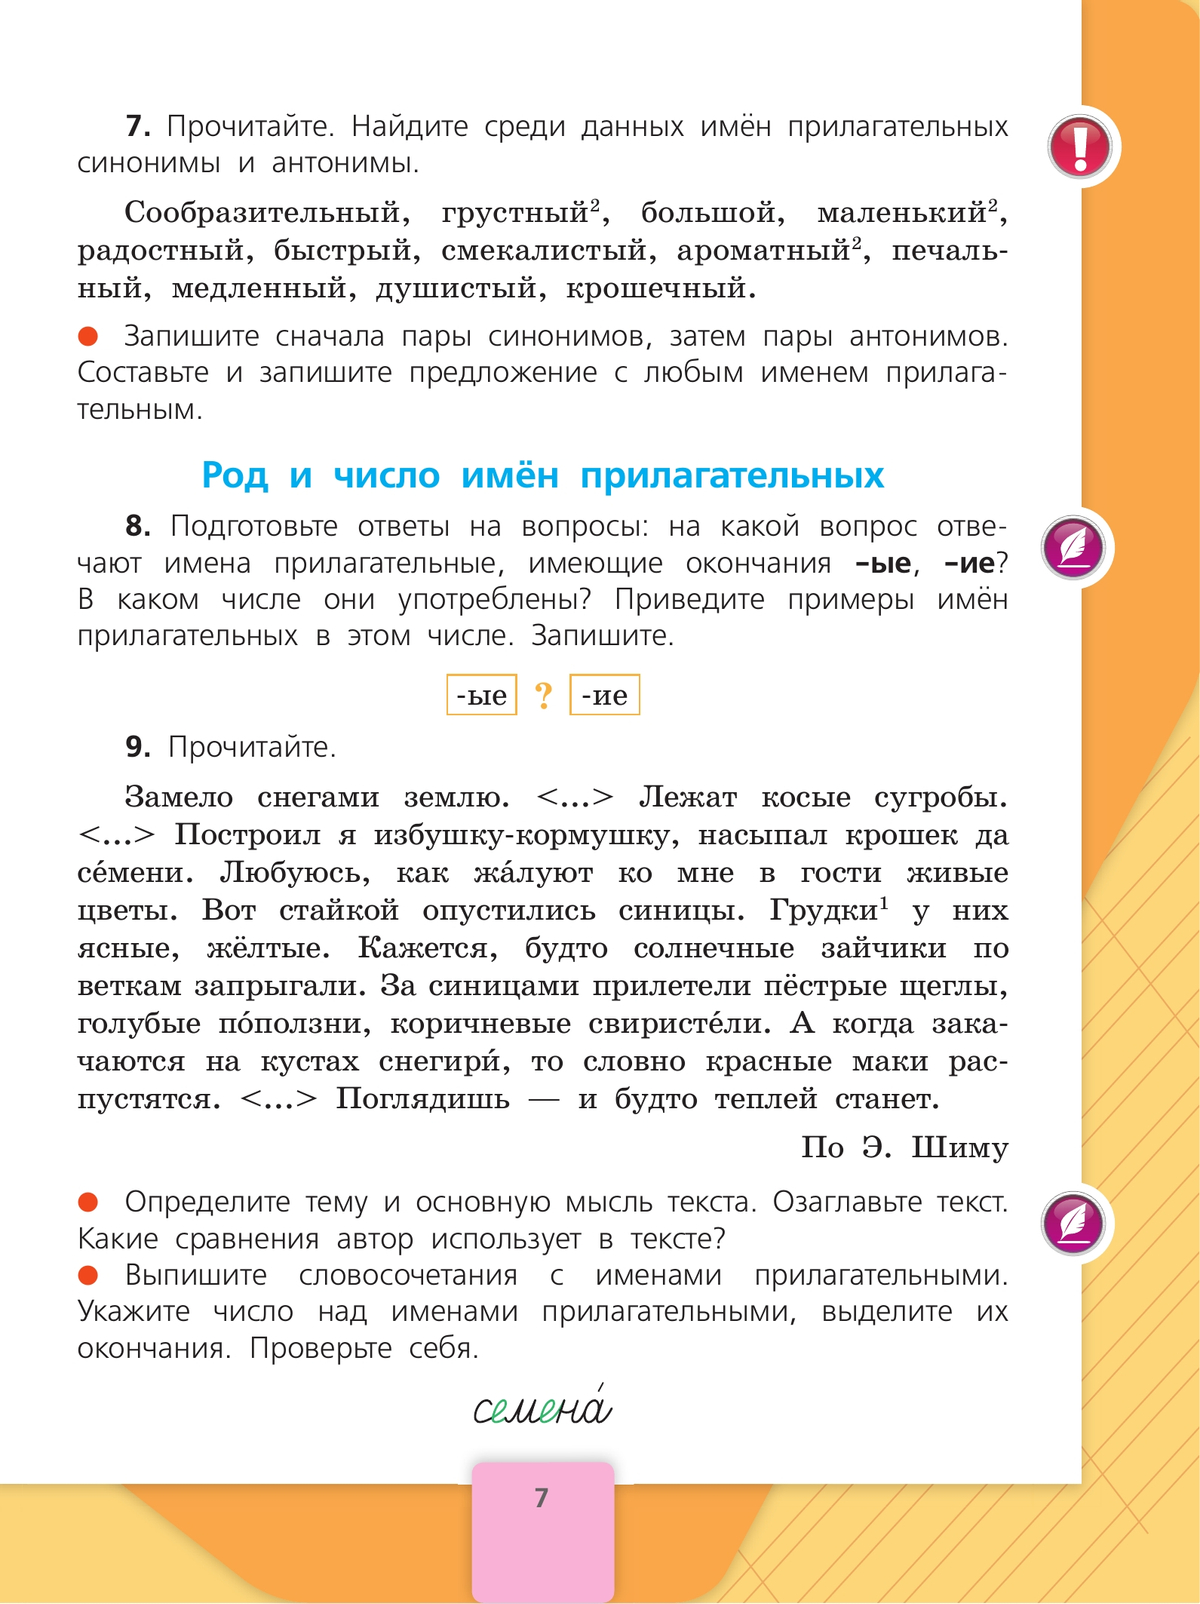 Русский язык. 4 класс. Учебник. В 2 ч. Часть 2 6